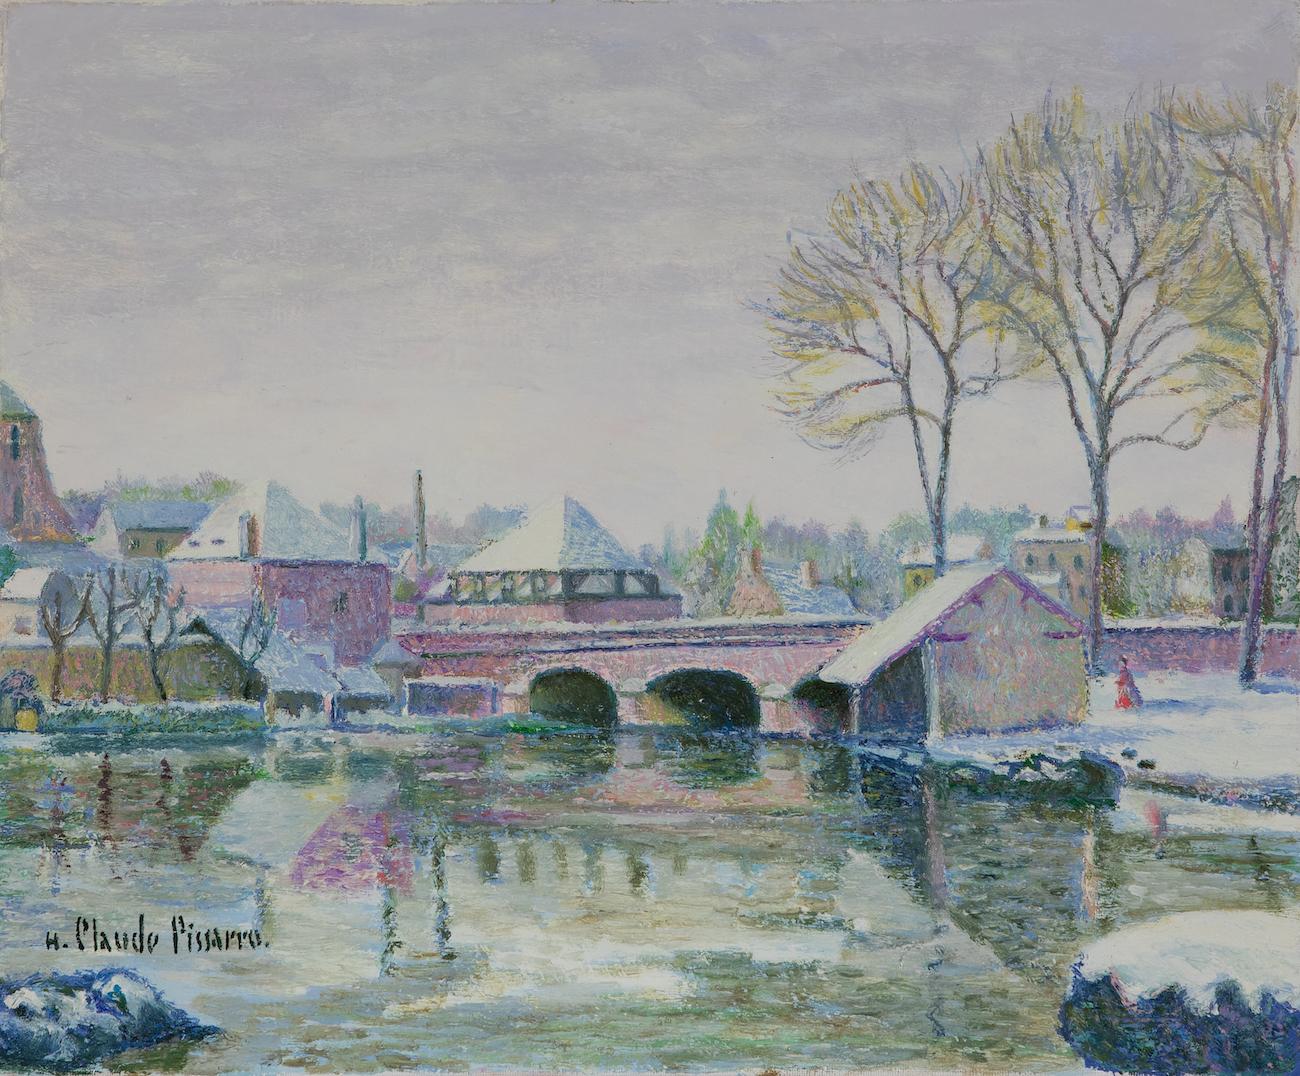 Hughes Claude Pissarro Figurative Painting - Le Pont Rose sous la Neige - Châteaudun by H. Claude Pissarro - Oil painting